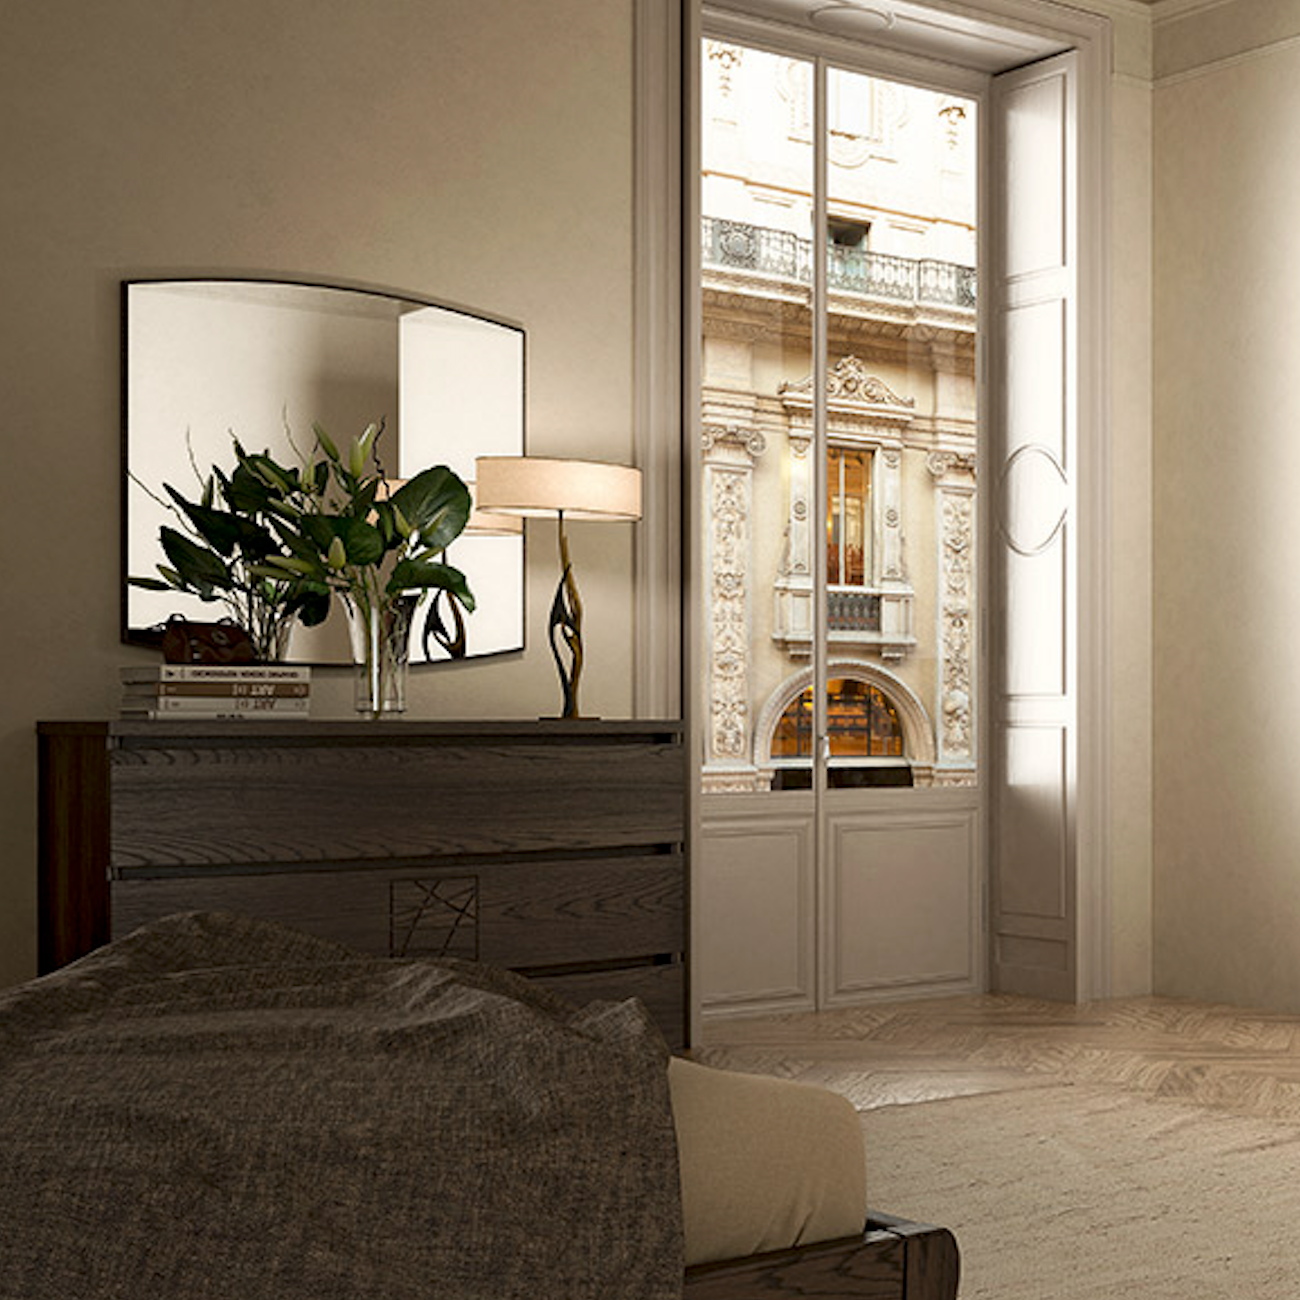 Современная лакированная спальня с двуспальной кроватью, выполненная из орехового дерева Коллекция Modigliani Piombini